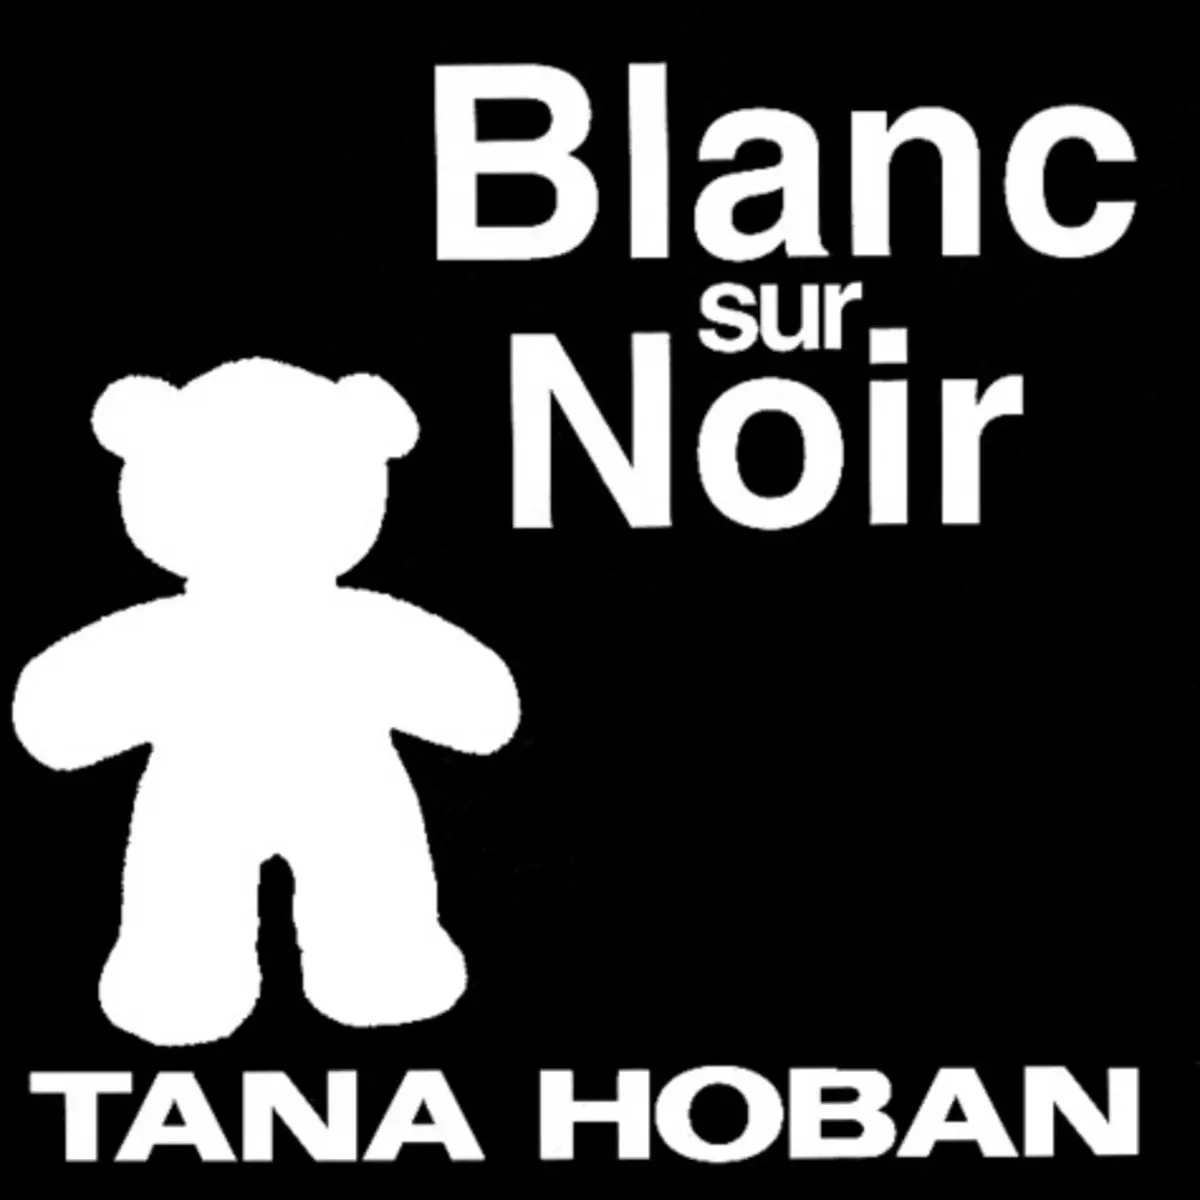  BLANC SUR NOIR, Hoban Tana